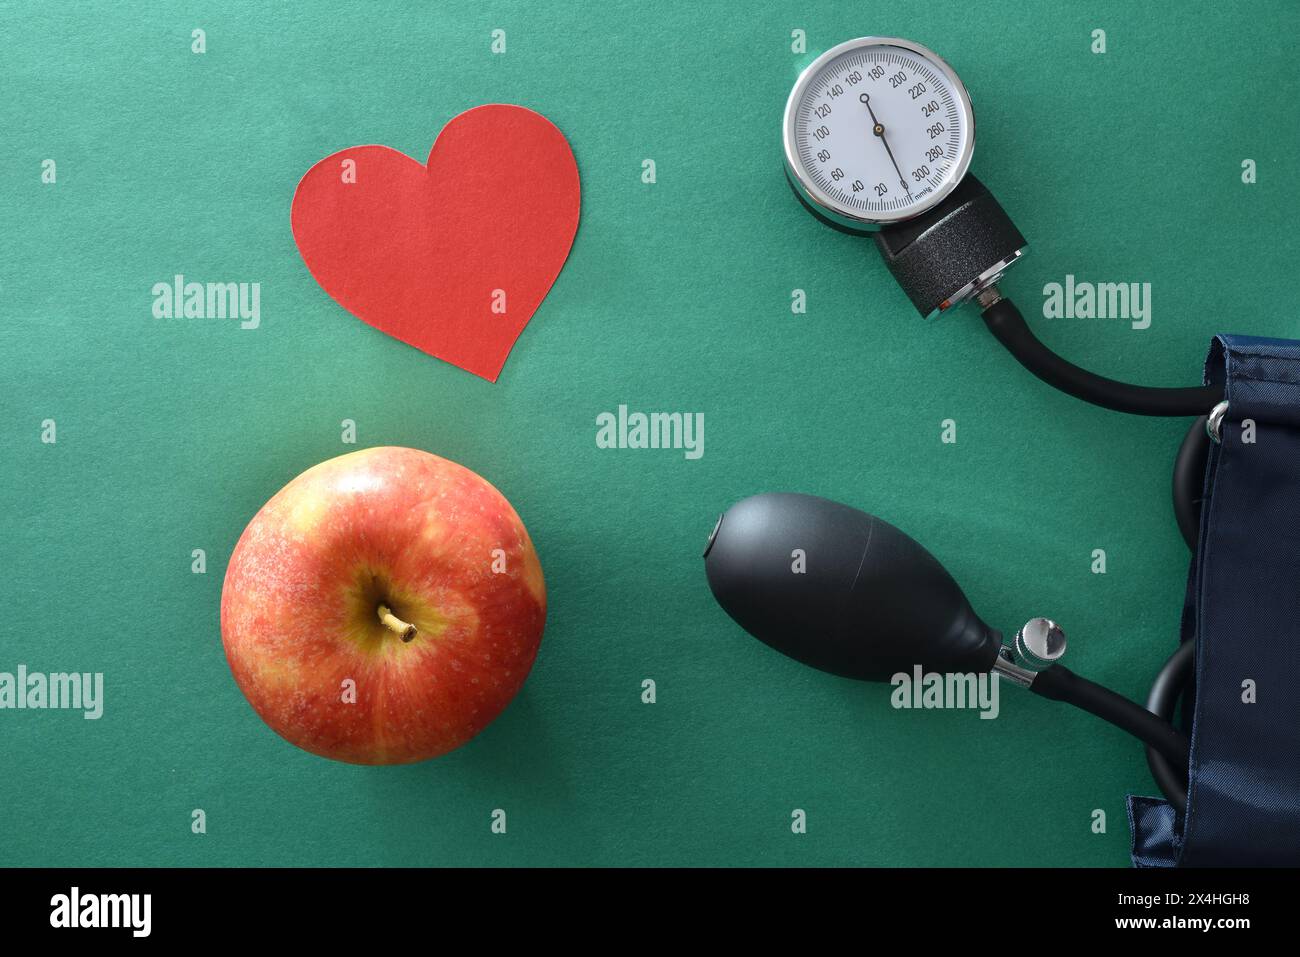 Concetto di controllo della pressione sanguigna con uno stile di vita sano con misuratore della pressione sanguigna mela e ritaglio cardiaco su sfondo verde. Vista dall'alto. Foto Stock